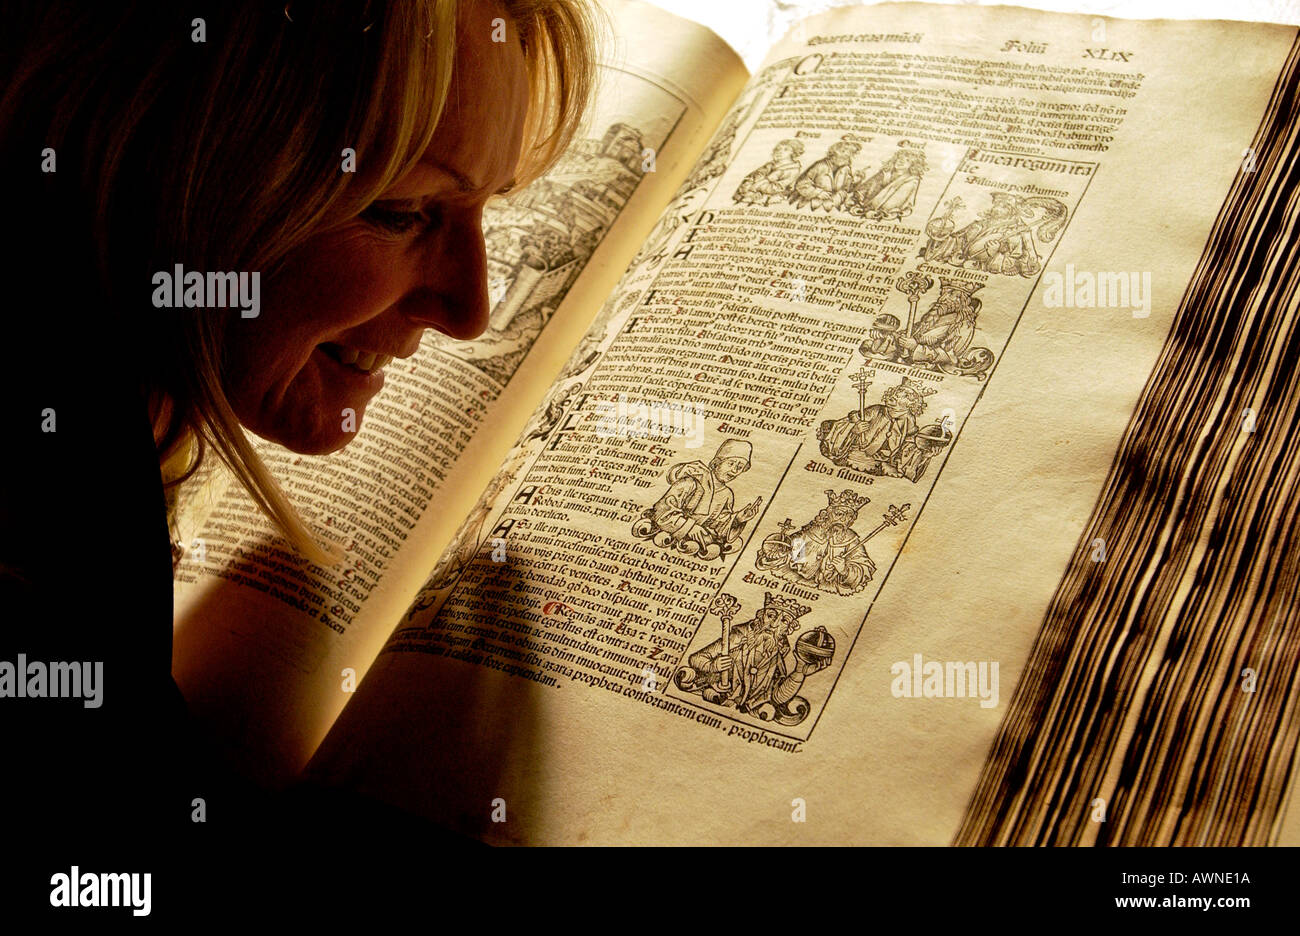 Bibliothekarin Frau untersucht ein uraltes Buch die Schedelsche Weltchronik von 1493 in Brighton Bibliothek seltenes Buch Stockfoto